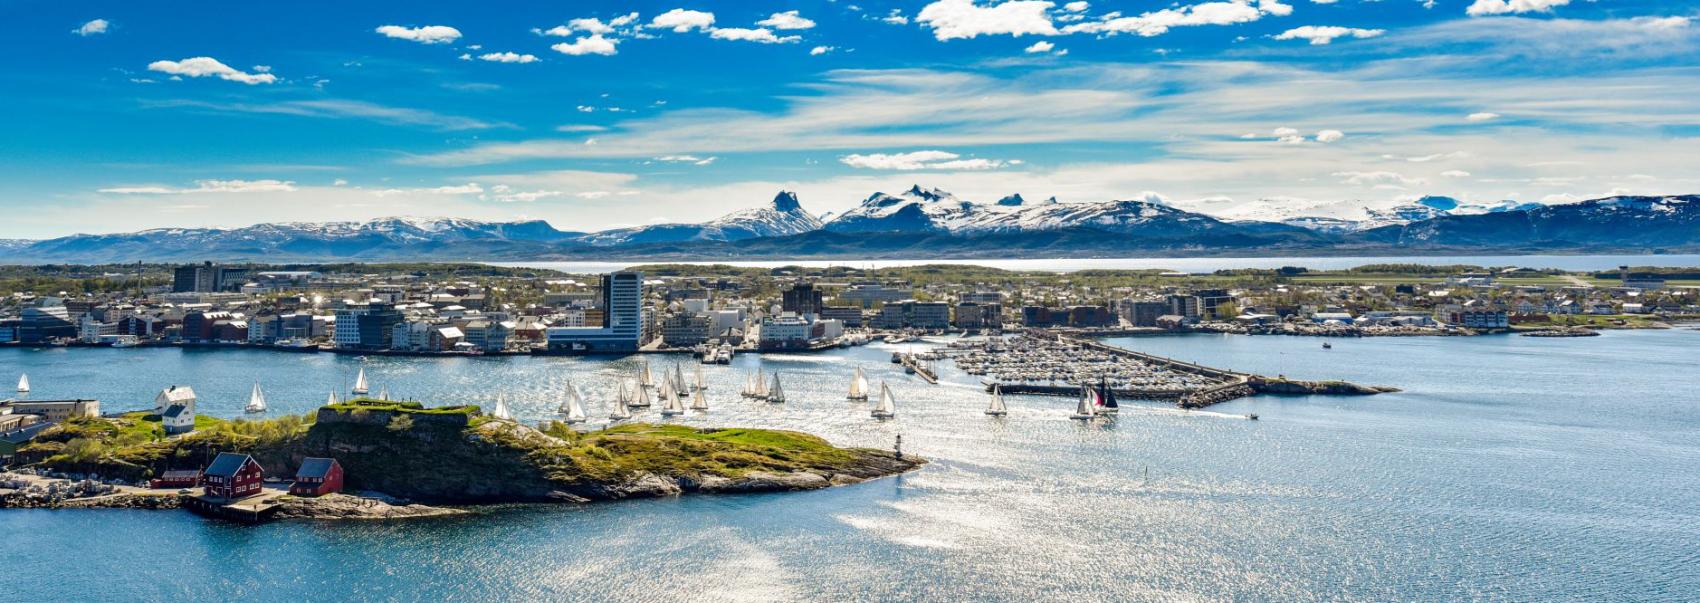 Oversiktsbilde over Bodø by med hav og himmel. Foto.